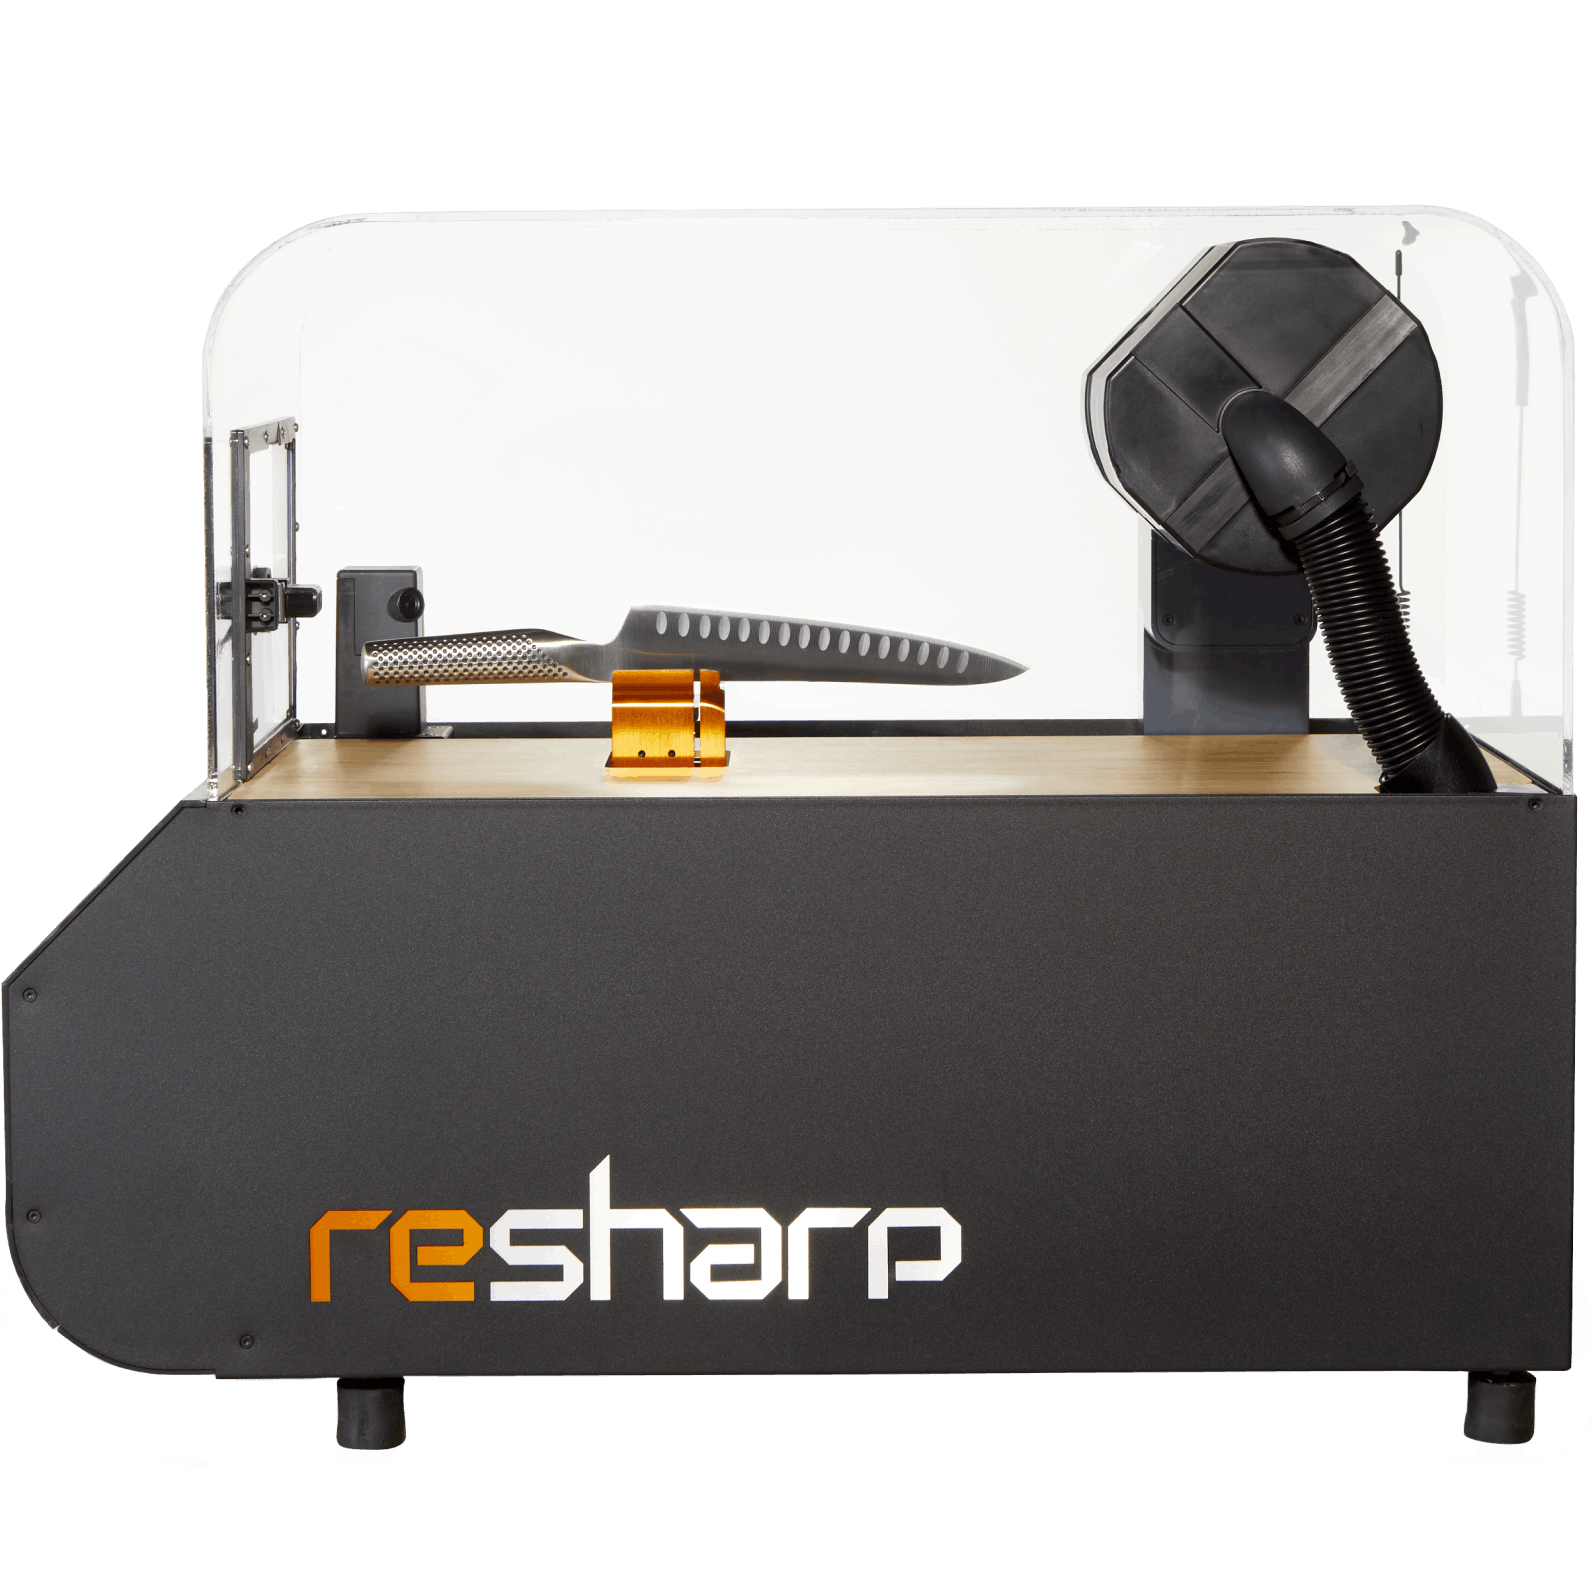 Resharp machine